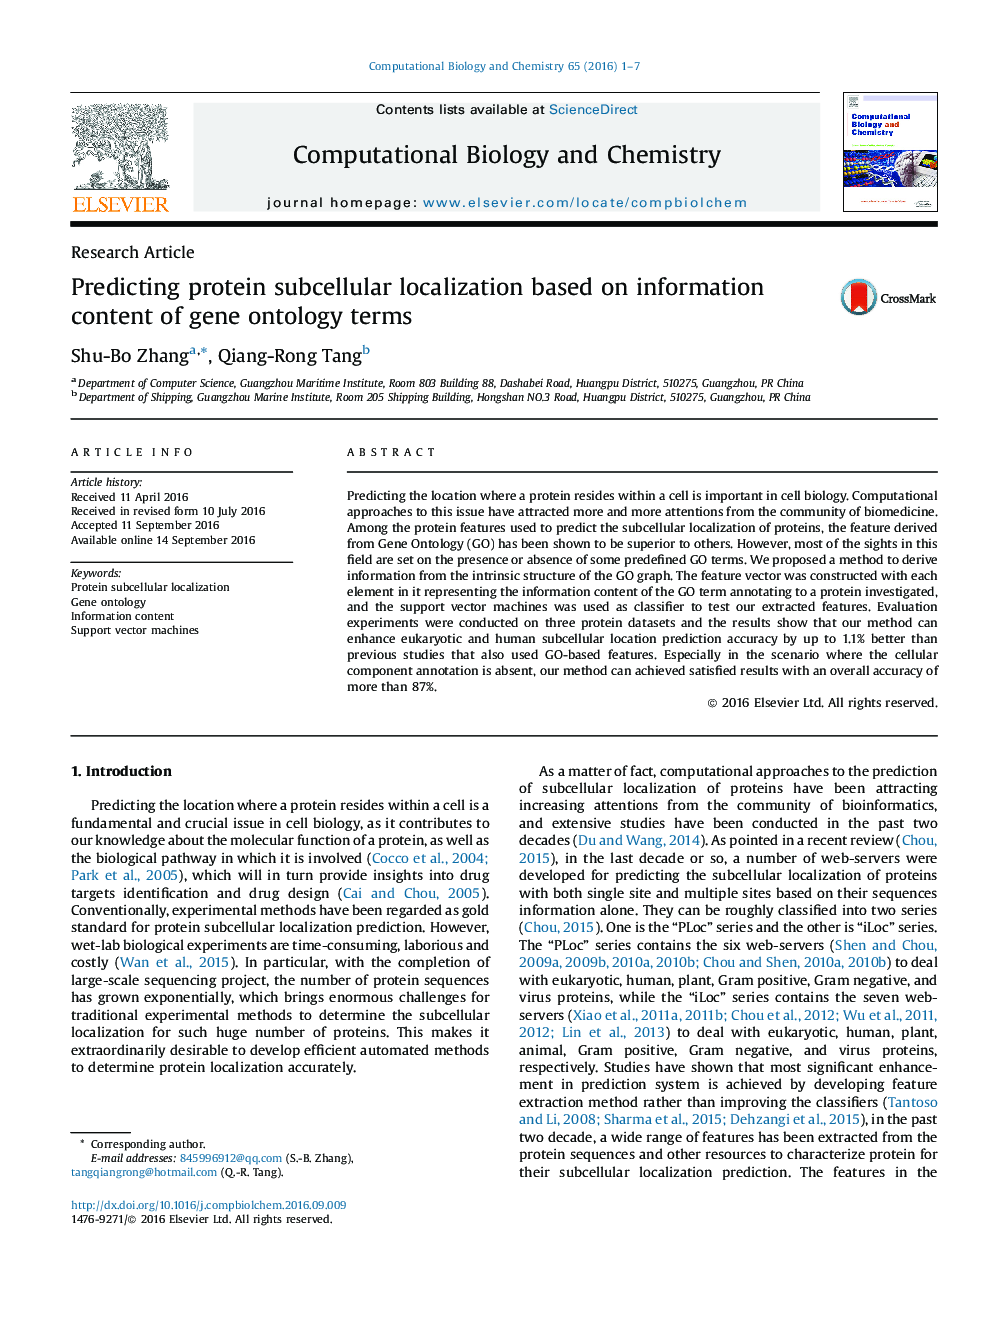 مقاله پژوهشی پیش بینی محلی سازی سلول های پروتئینی براساس اطلاعات محتوای اصطلاحات آنتولوژی ژنی 